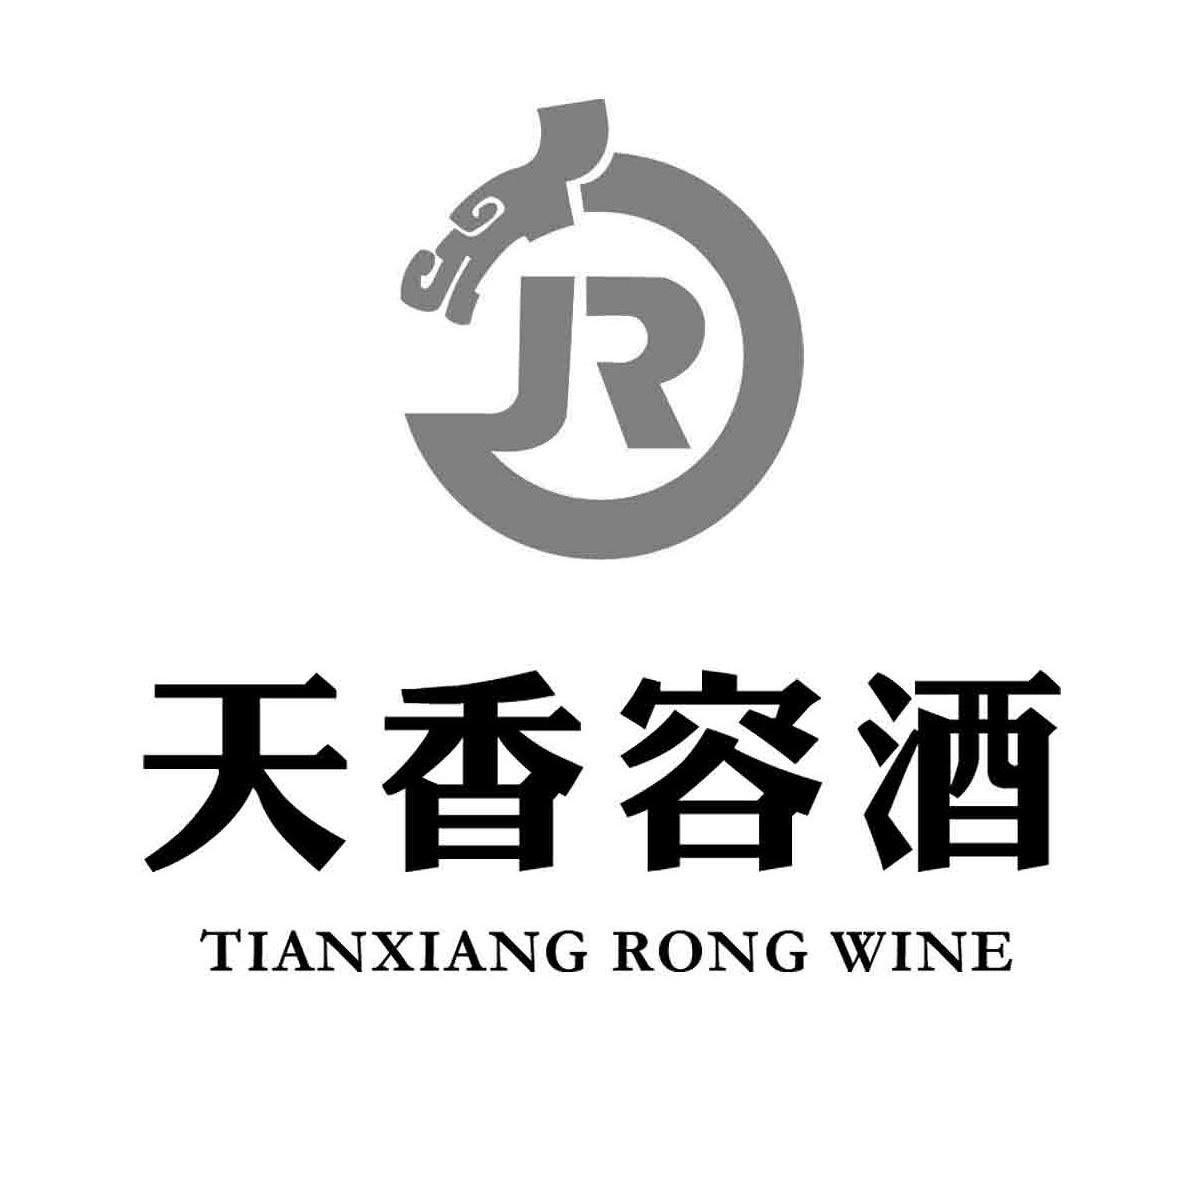 天香 容 酒 tianxiang rong wine r商标已注册